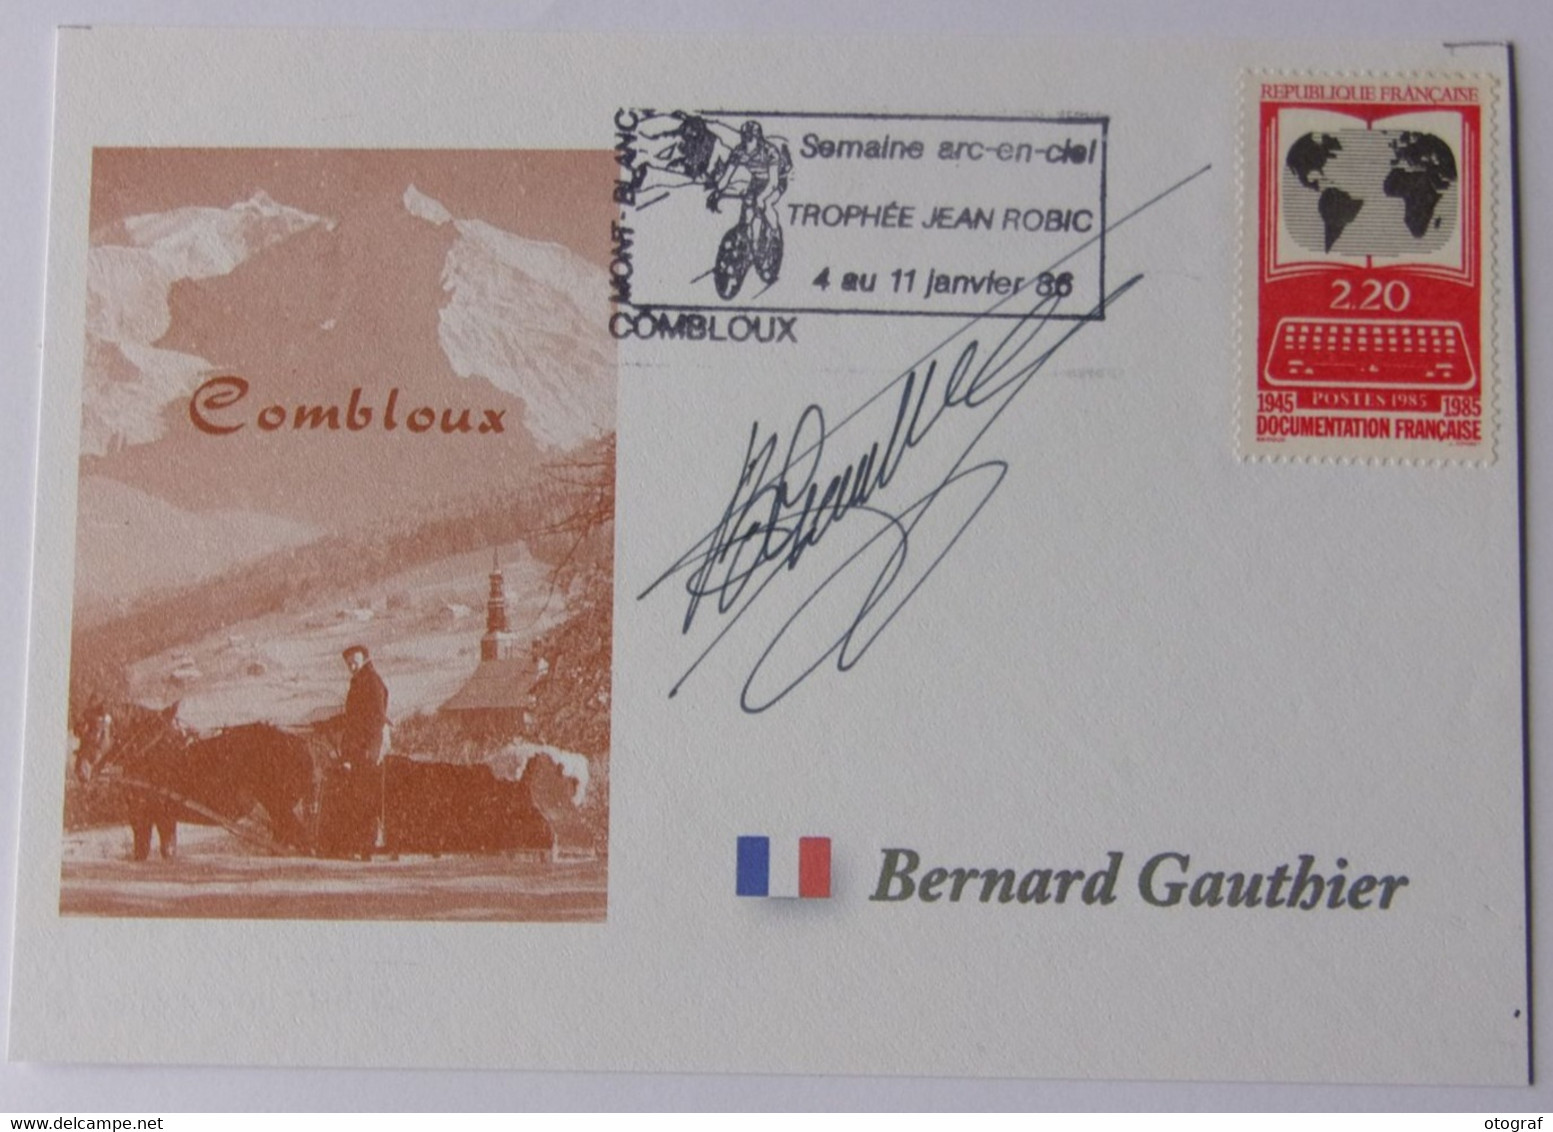 Bernard GAUTHIER - Signé / Dédicace Authentique / Autographe - Ciclismo